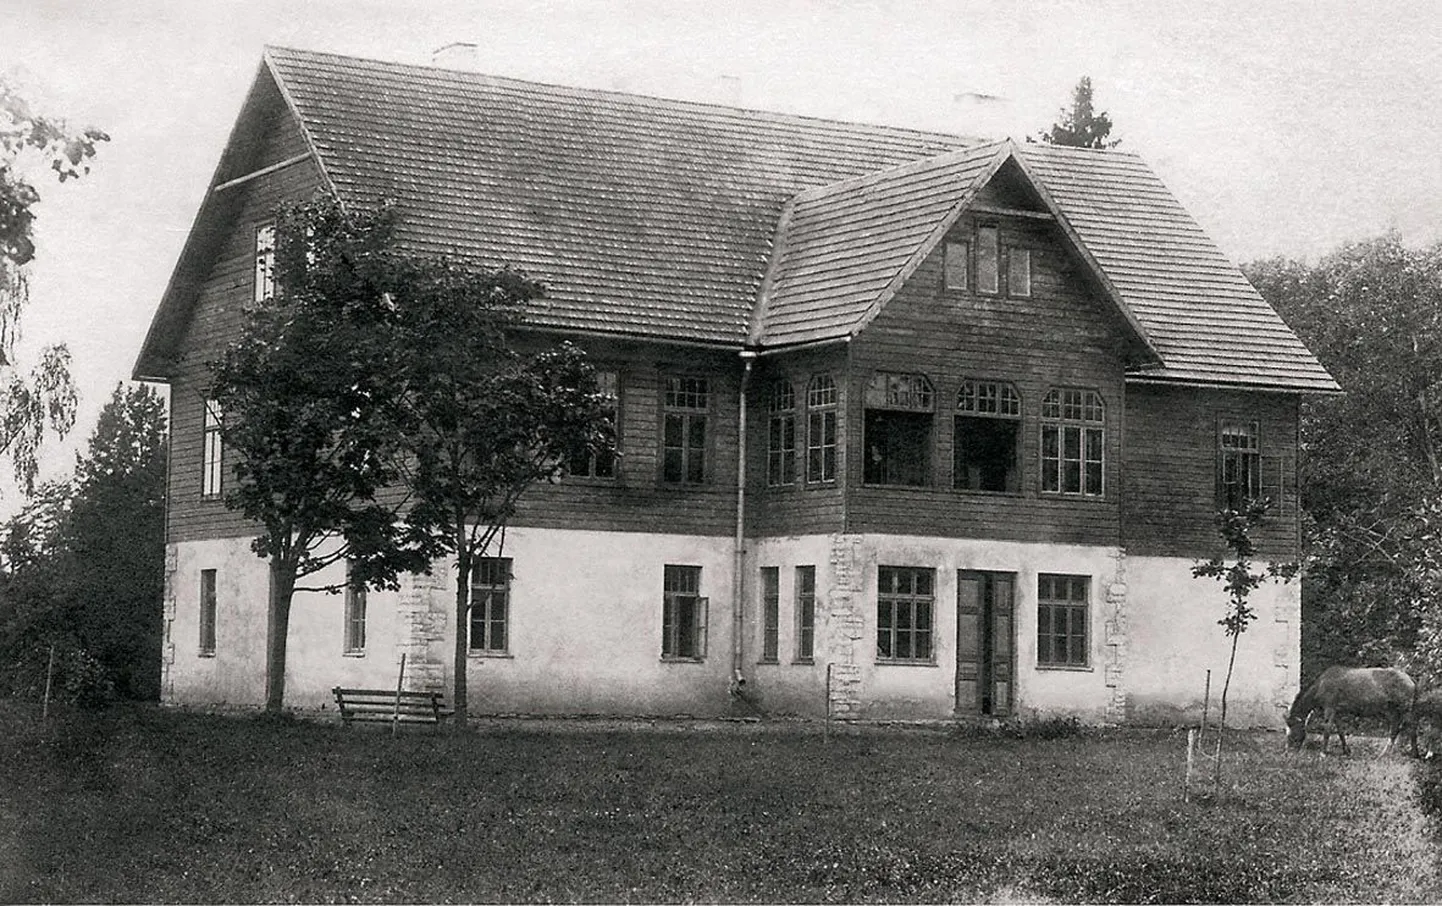 Piiumetsa mõisa tagafassaad. Hoone esimene korrus on kivist ja teine puidust. Enne maareformi oli mõisa peremees parun Georg Rausch von Traubenberg. 1932